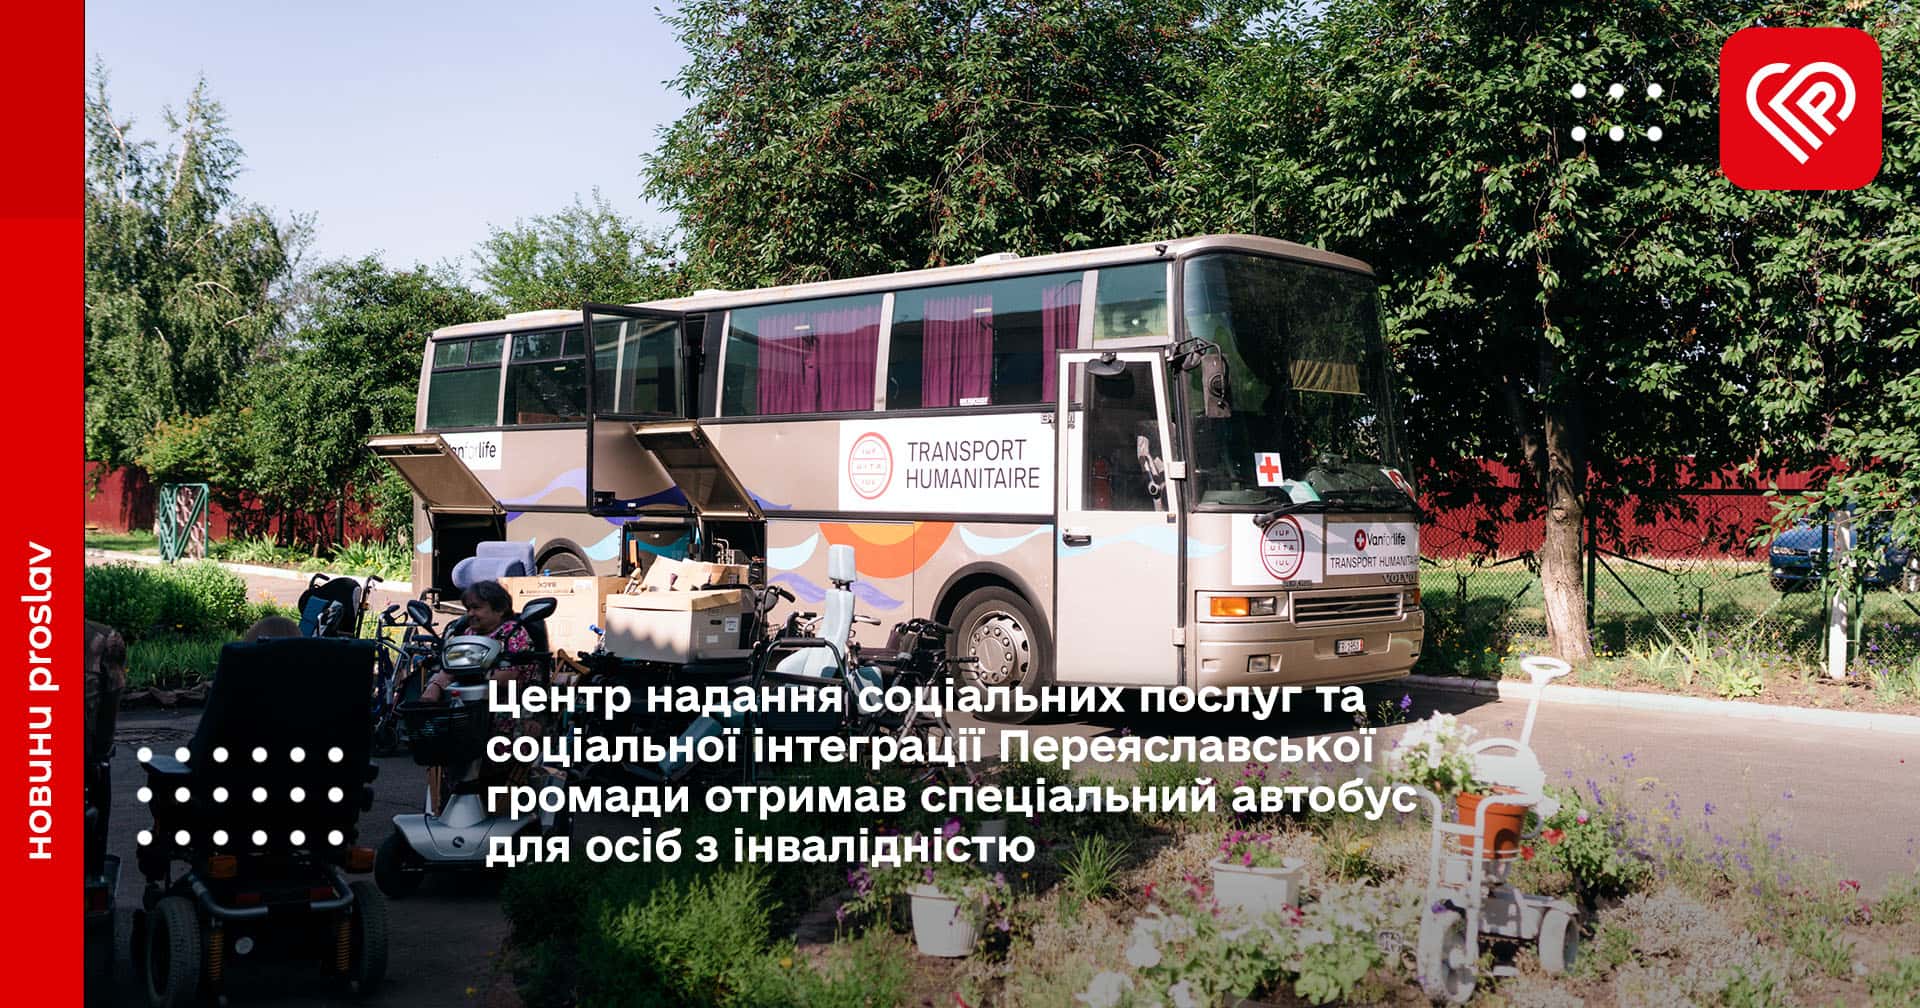 Центр надання соціальних послуг та соціальної інтеграції Переяславської громади отримав спеціальний автобус для осіб з інвалідністю